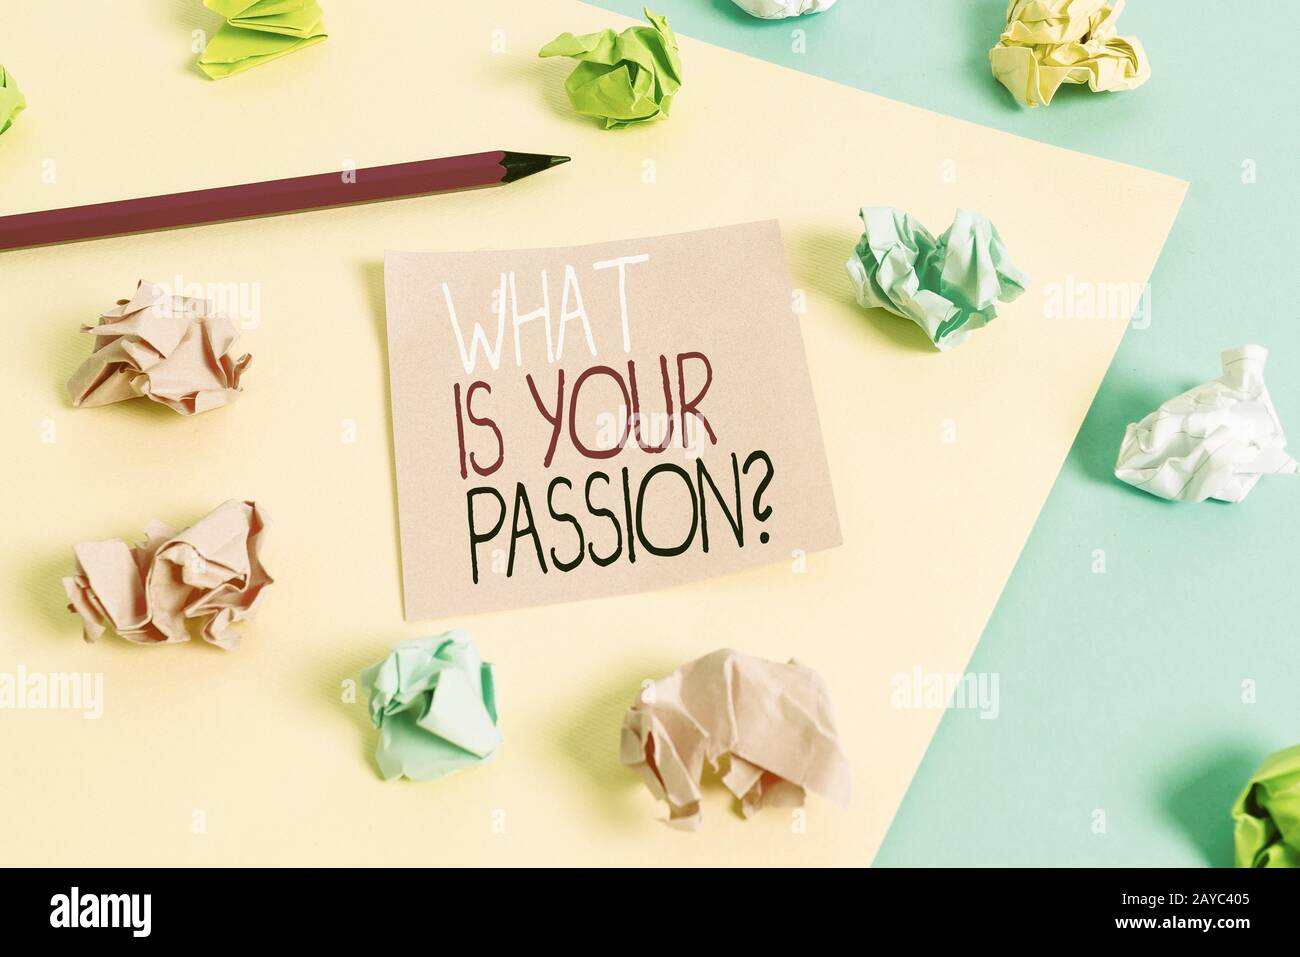 Schreiben Sie einen Hinweis, der zeigt, was Ihre Passionsfrage ist. Geschäftsfoto mit der Frage nach seinem starken und kaum kontrollierbaren Em Stockfoto